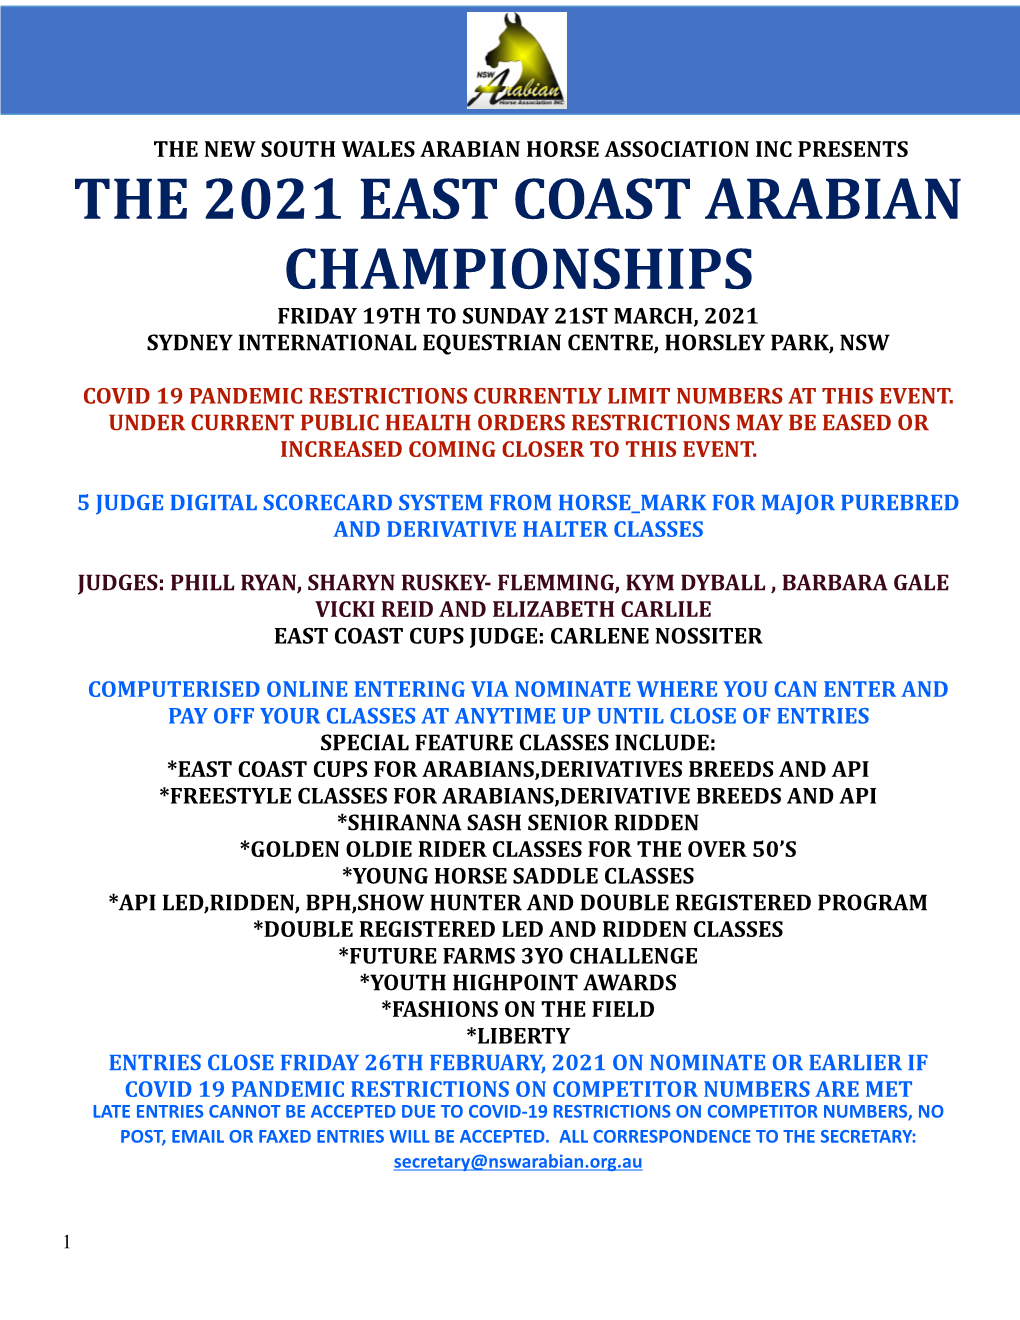 East Coast Program 2021